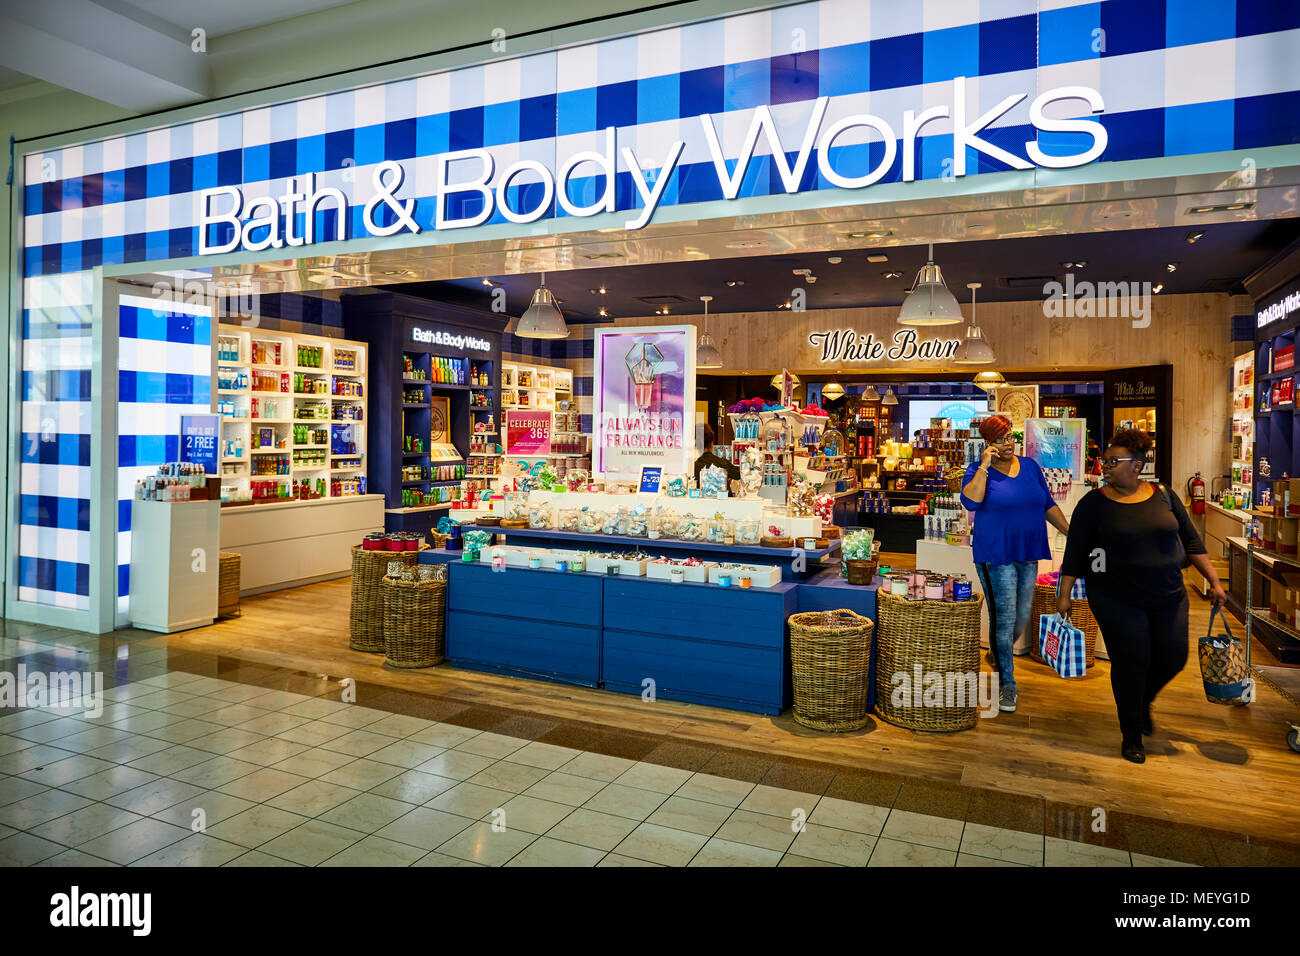 Atlanta capitale de l'état américain de Géorgie, le Bath & Body Works magasin dans un centre commercial Lenox Square Mall avec nom de la marque bien connue sur les magasins Banque D'Images